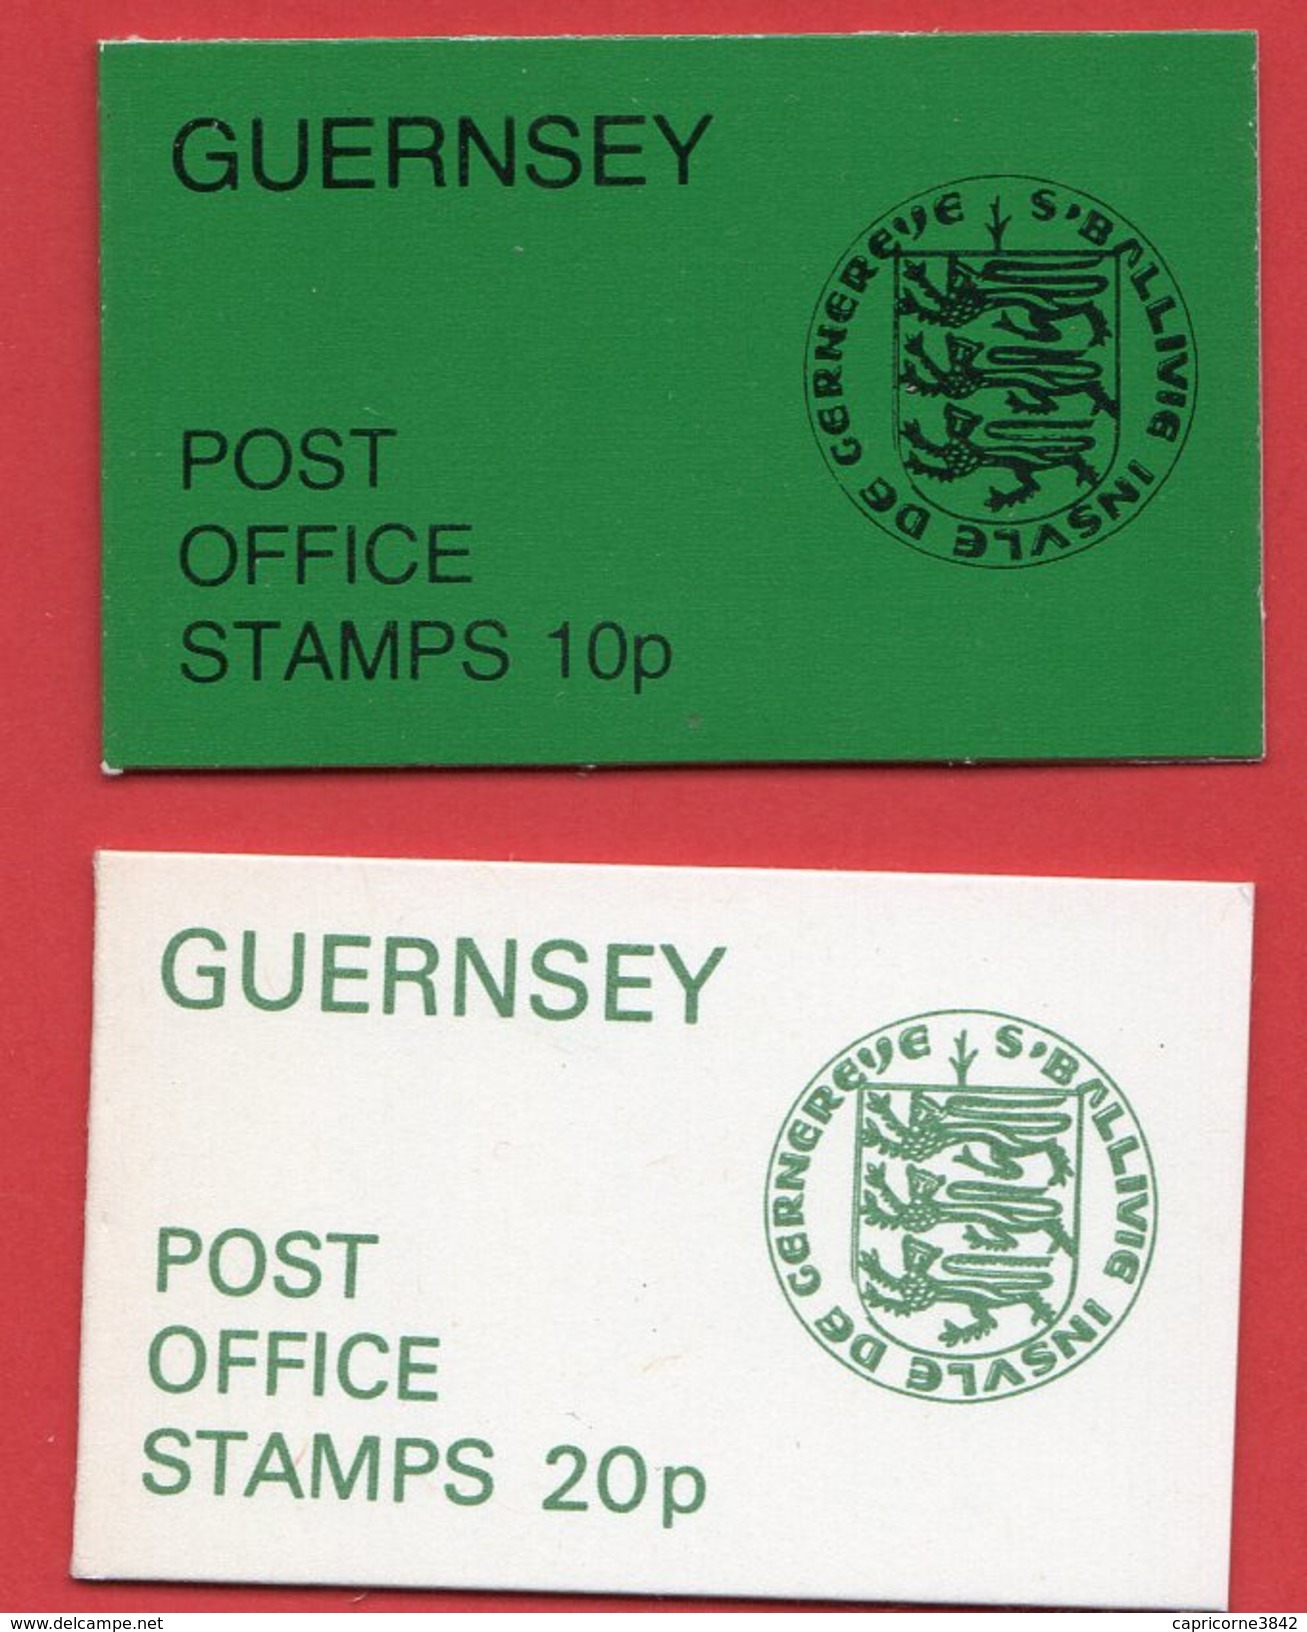 Guernesey - 2 Carnets - 1979: Pièces De Monnaies Et 1976: Uniformes Militaires - Guernesey